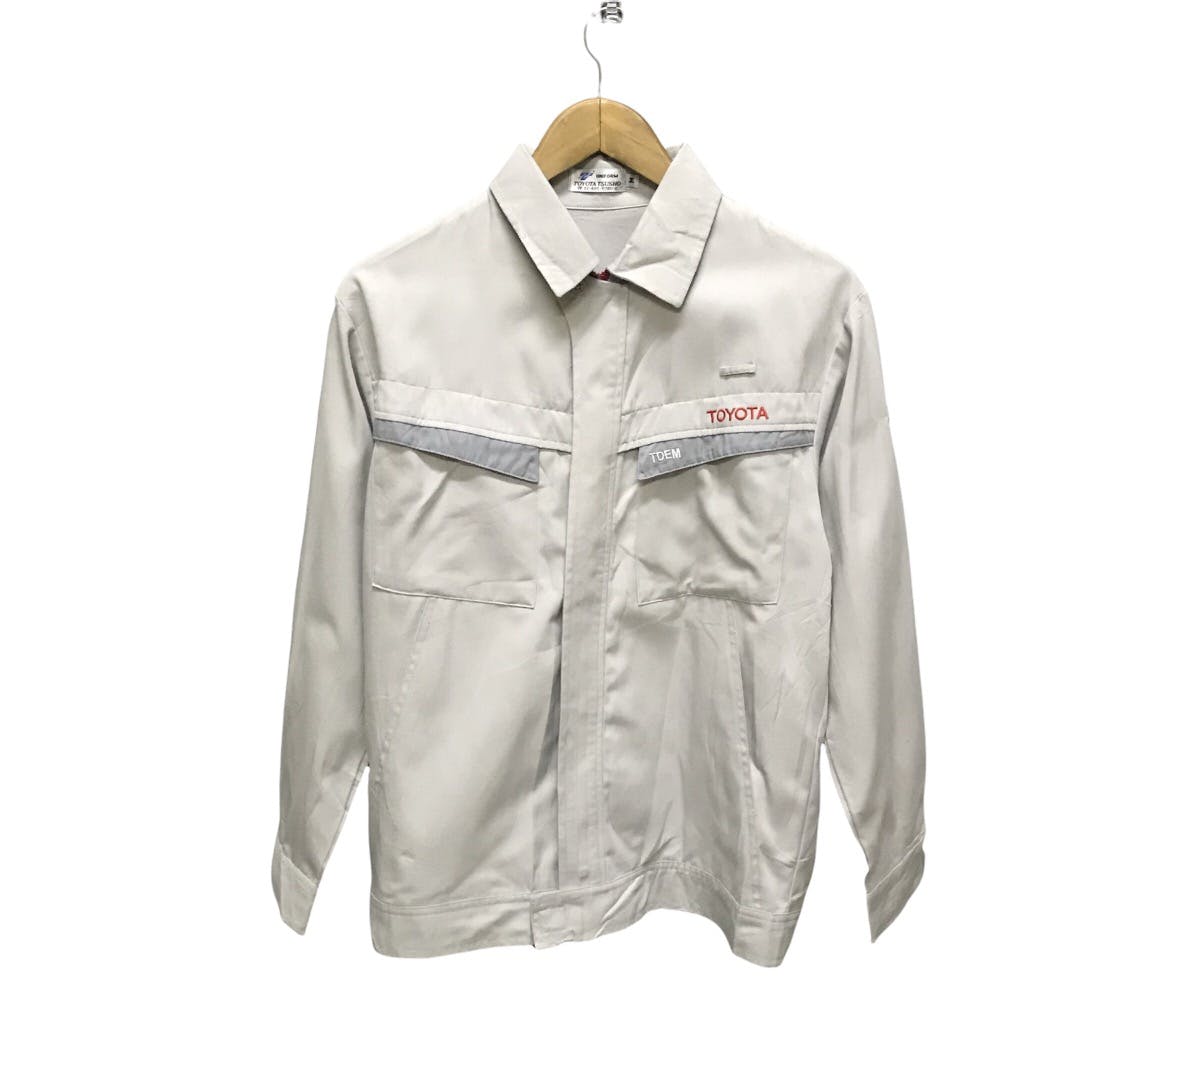 Vintage - Toyota uniform zipper work jacket